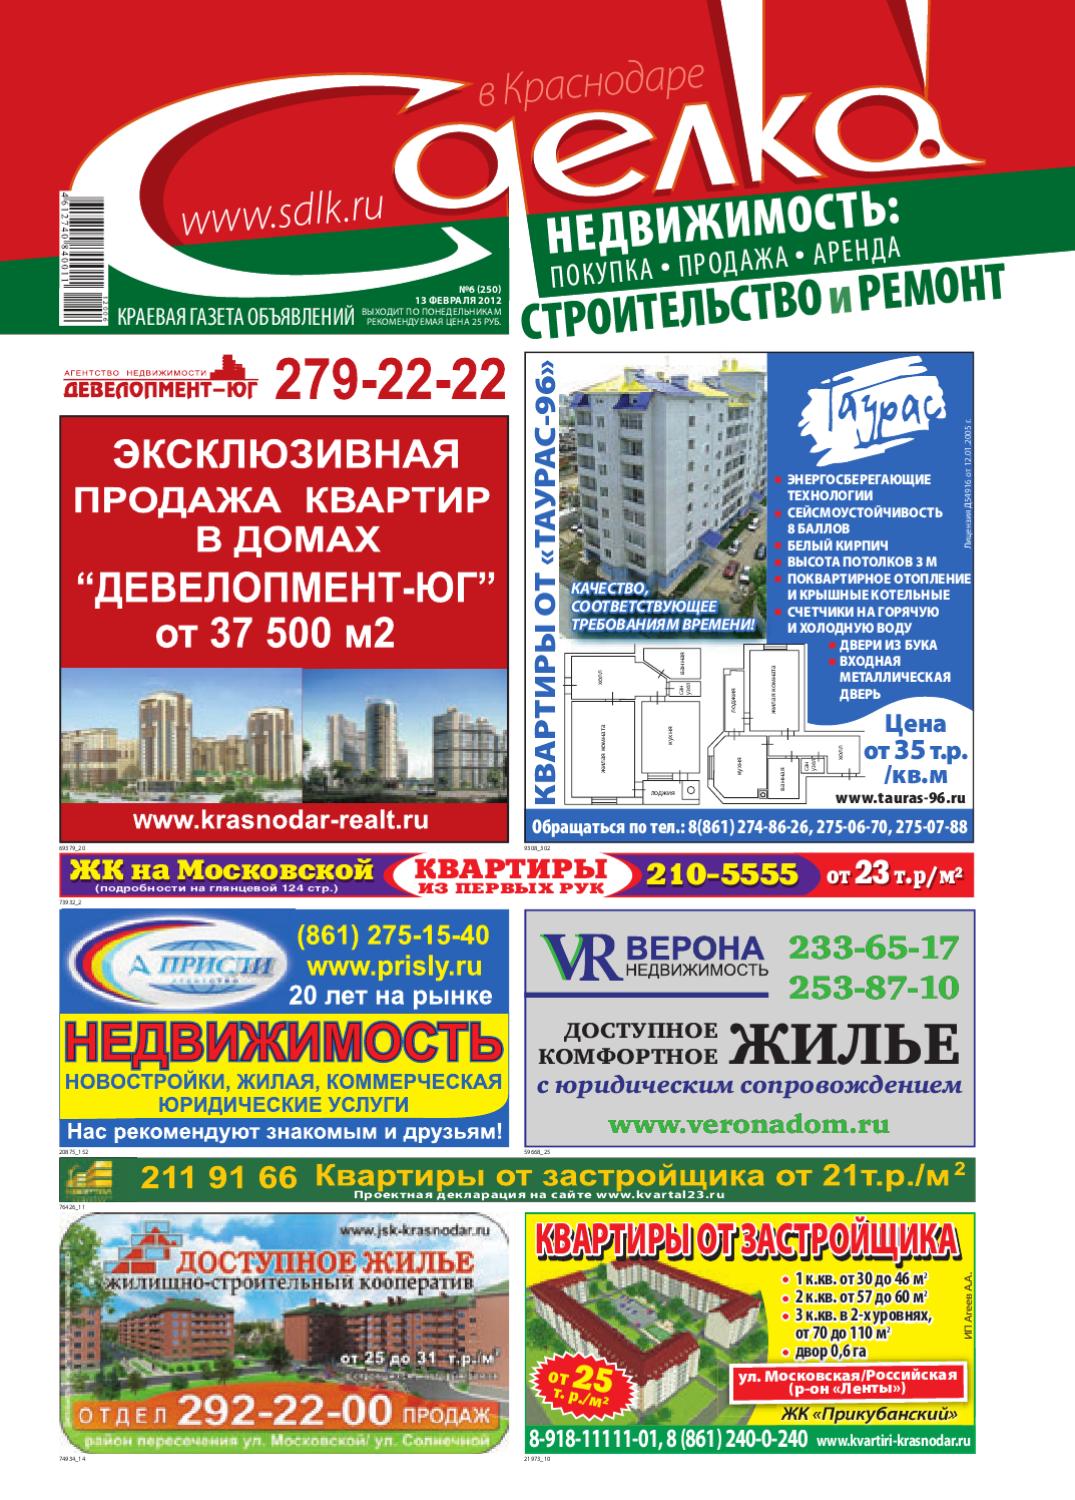 Сделка в Краснодаре №250, февраль 2012